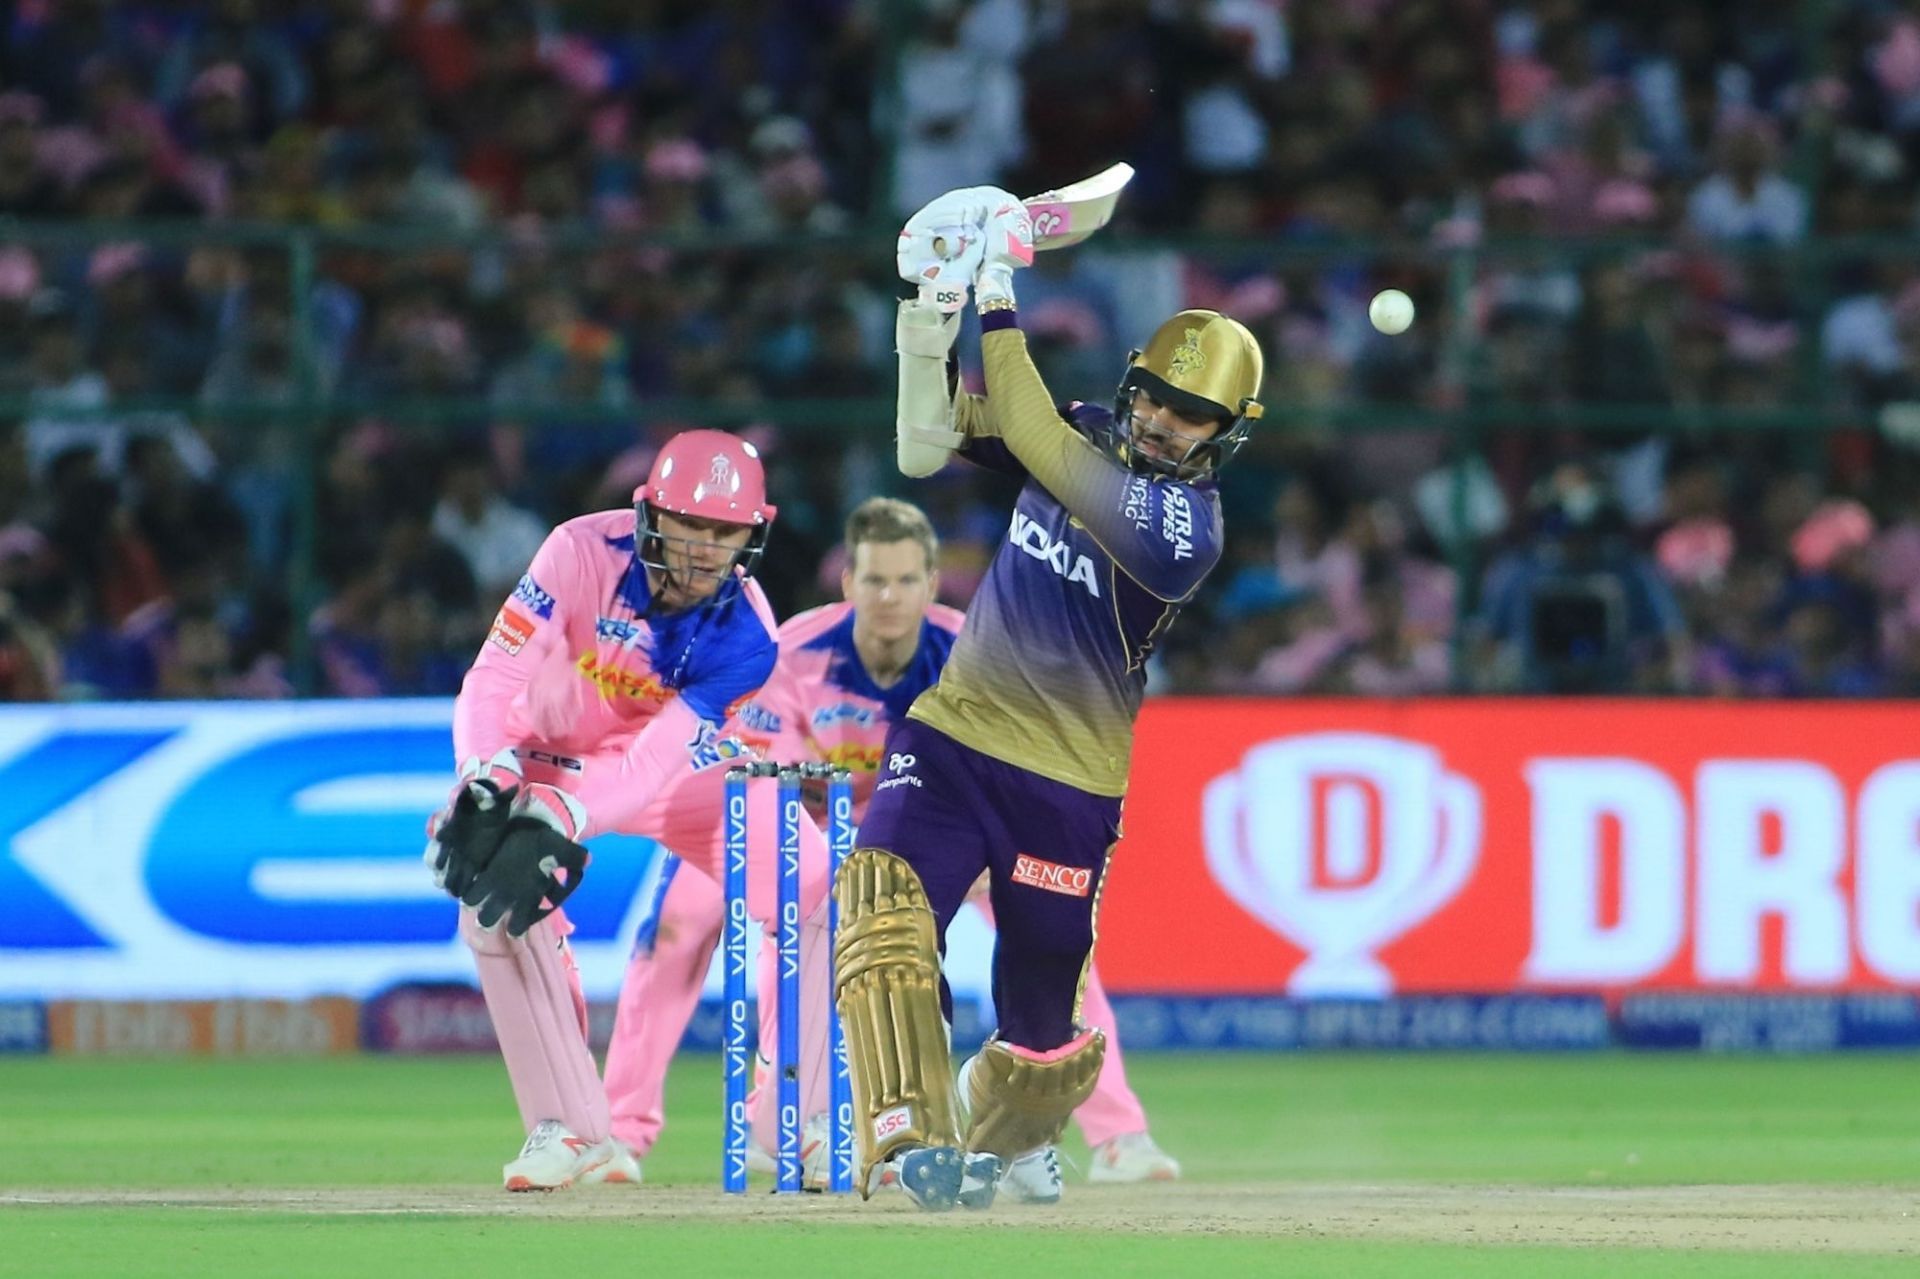 Sunil Narine began opening the innings for KKR in 2017